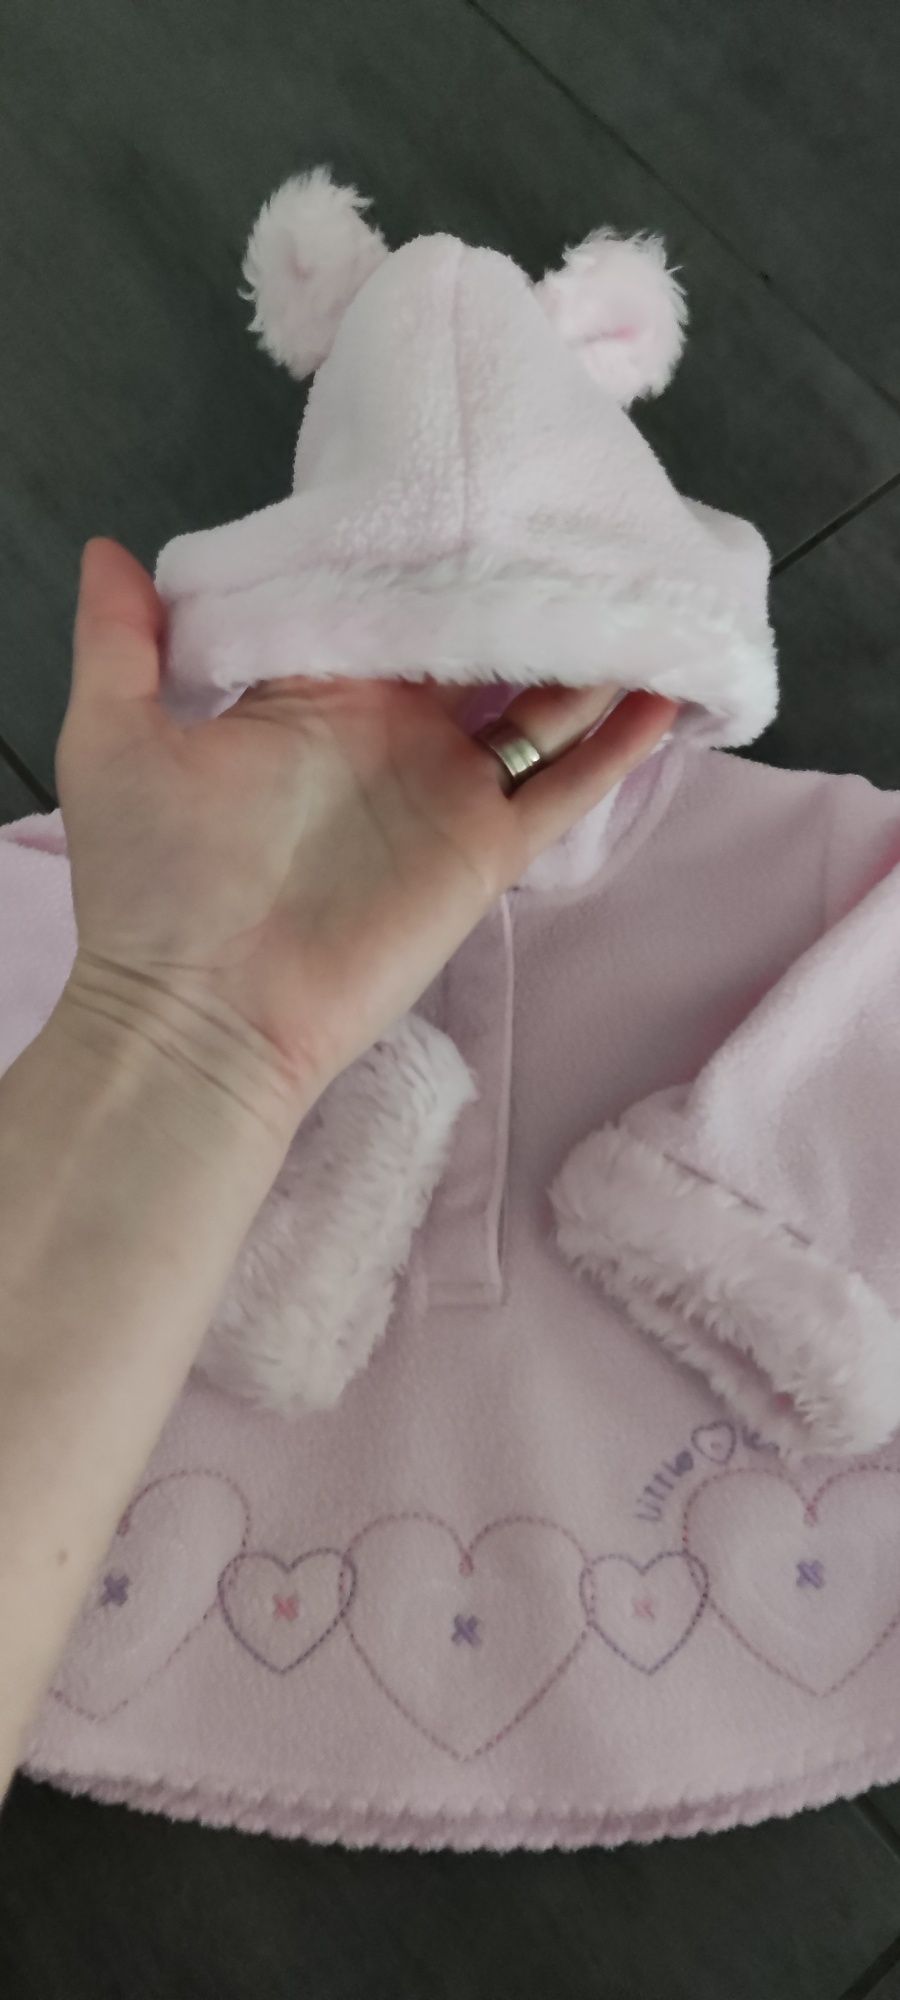 Bluza polarowa Miś z kapturem z uszkami, rozmiar 68 (3-6 miesięcy).